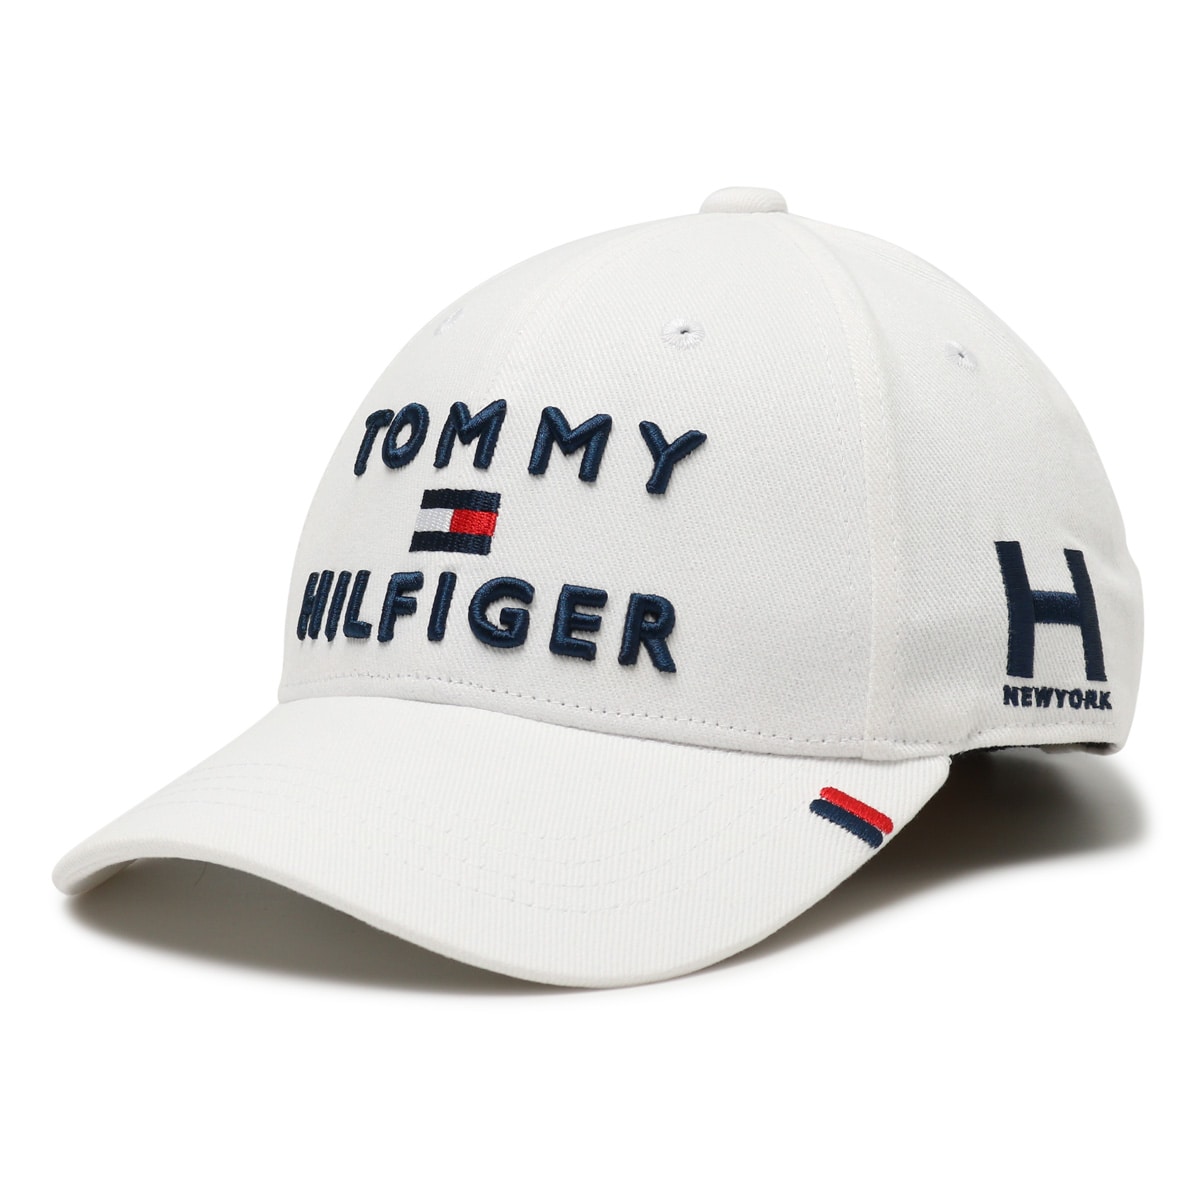 トミーヒルフィガー ゴルフ キャップ 帽子 メンズ レディース THMB903F トリプルロゴ Tommy Hilfiger